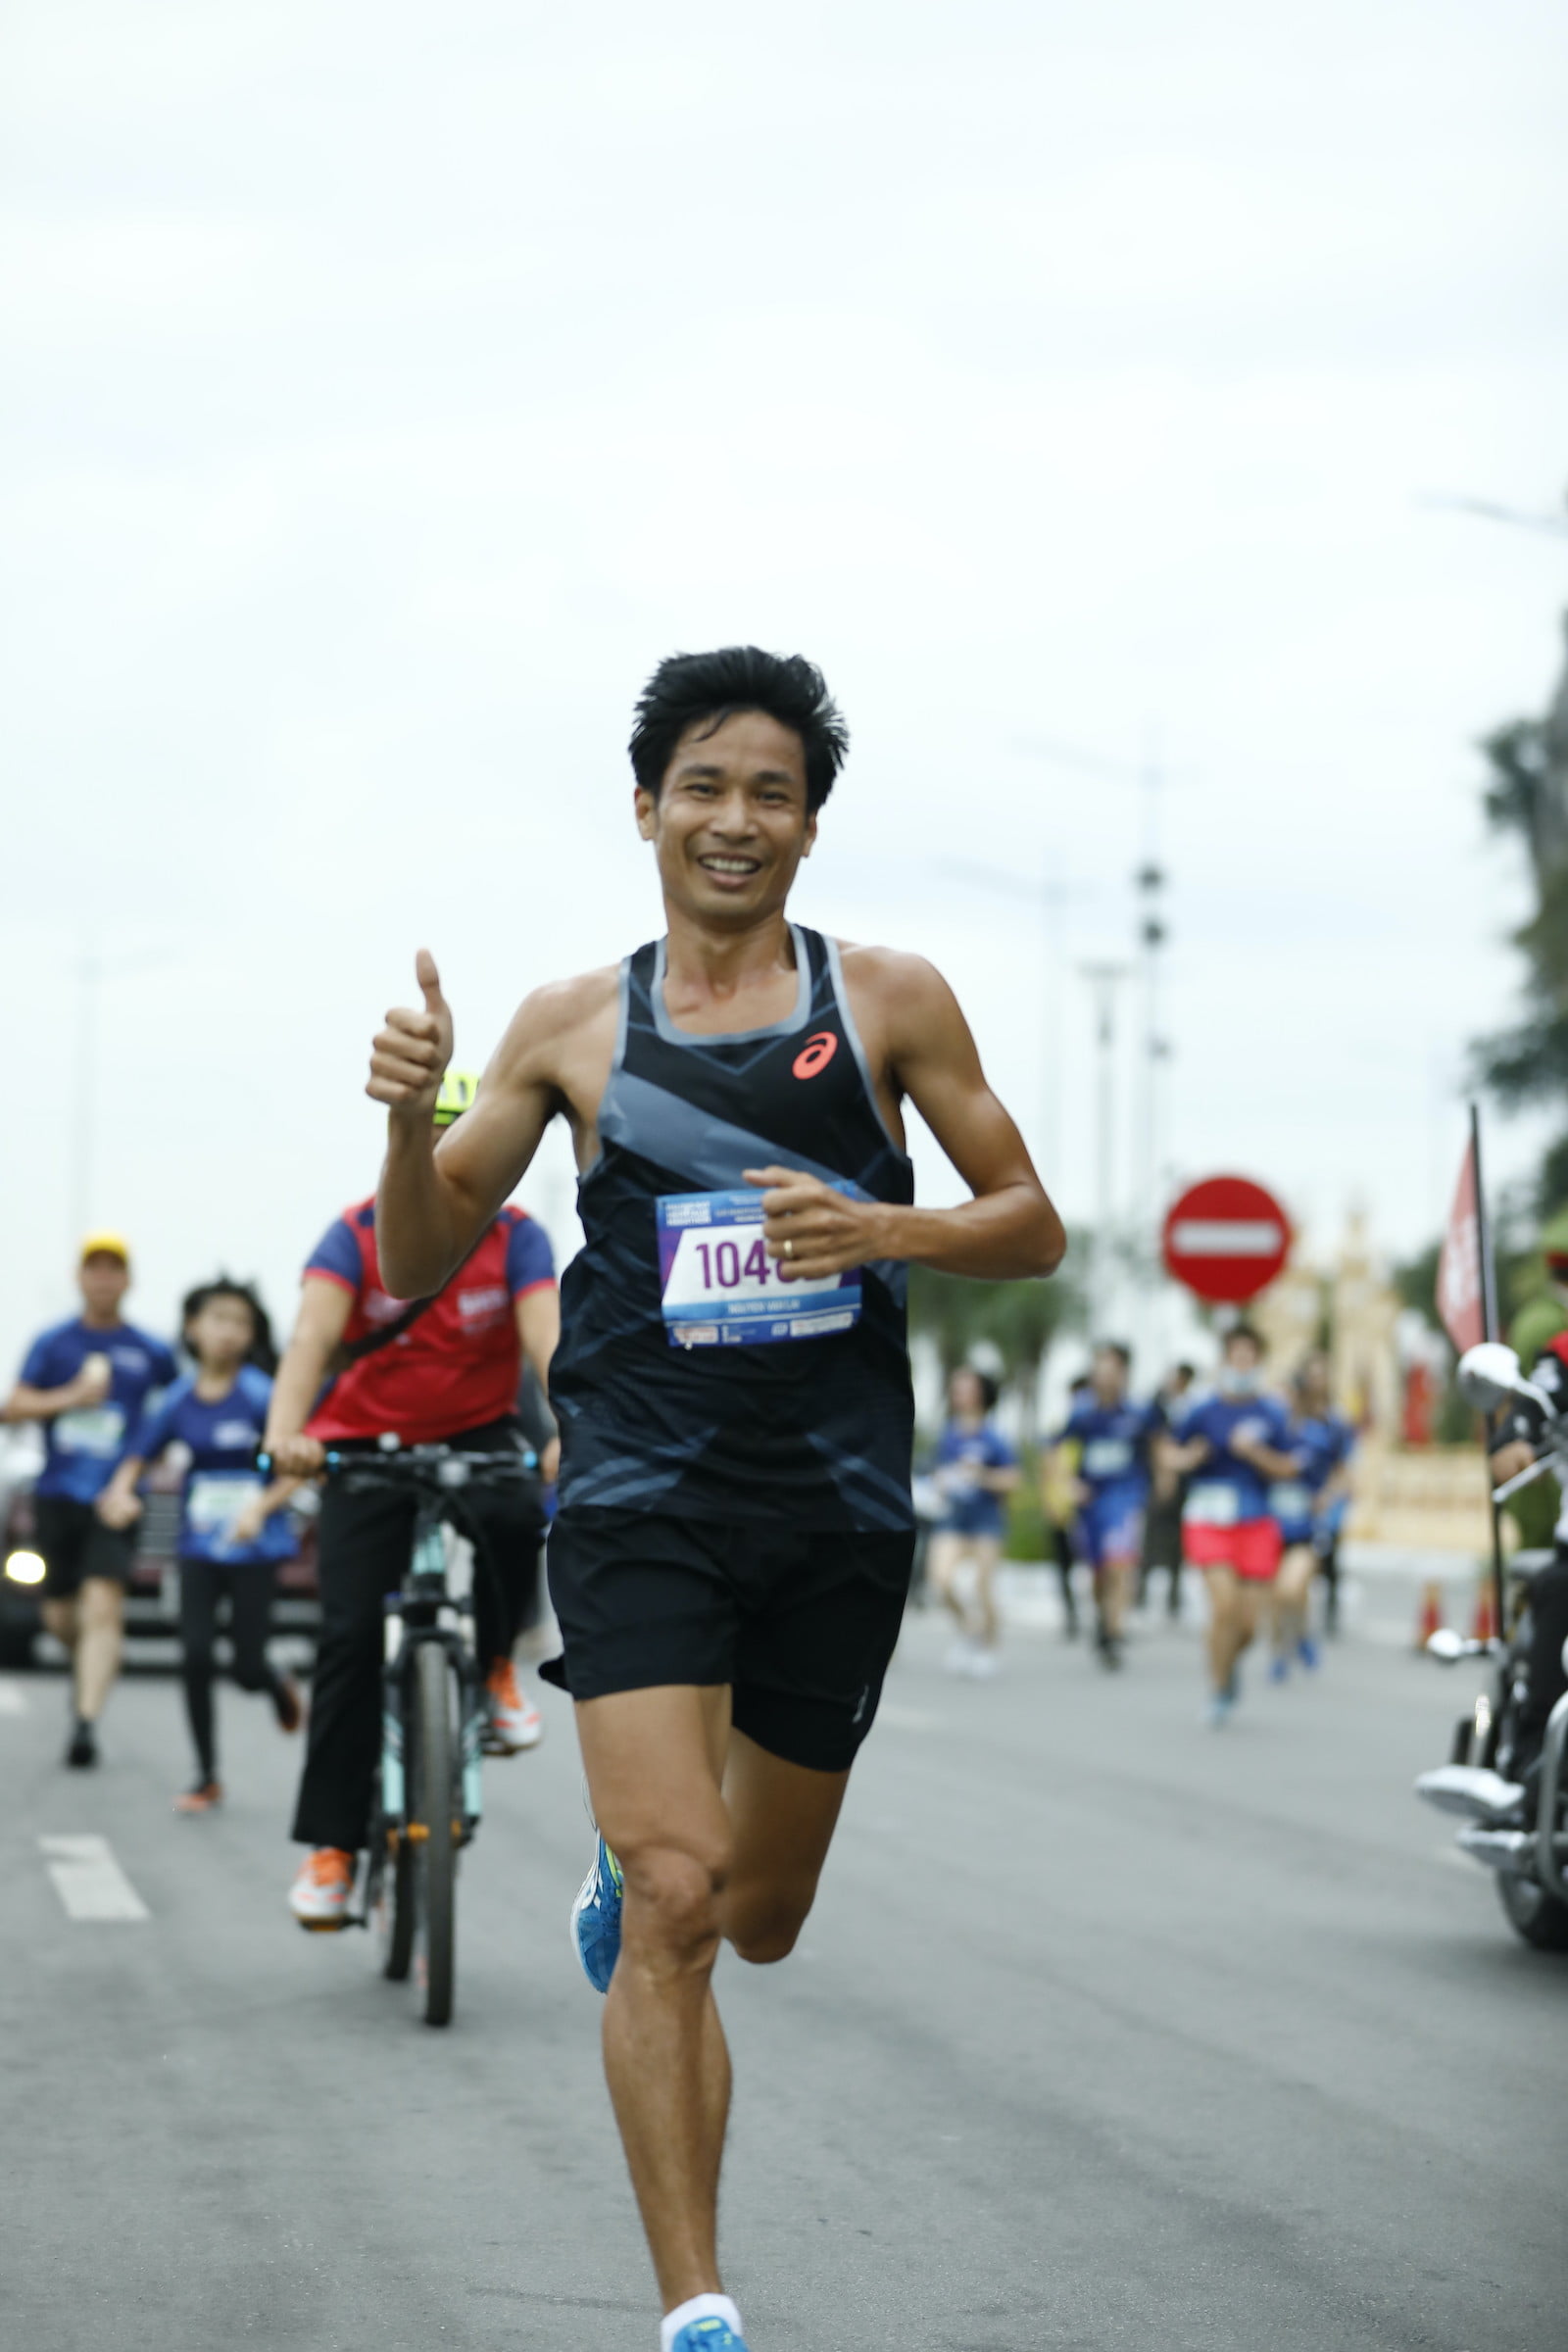 [QC] Những người bạn đồng hành đáng tin cậy trong Halong Bay Heritage Marathon 2020 - halong bay heritage marathon 2020 6